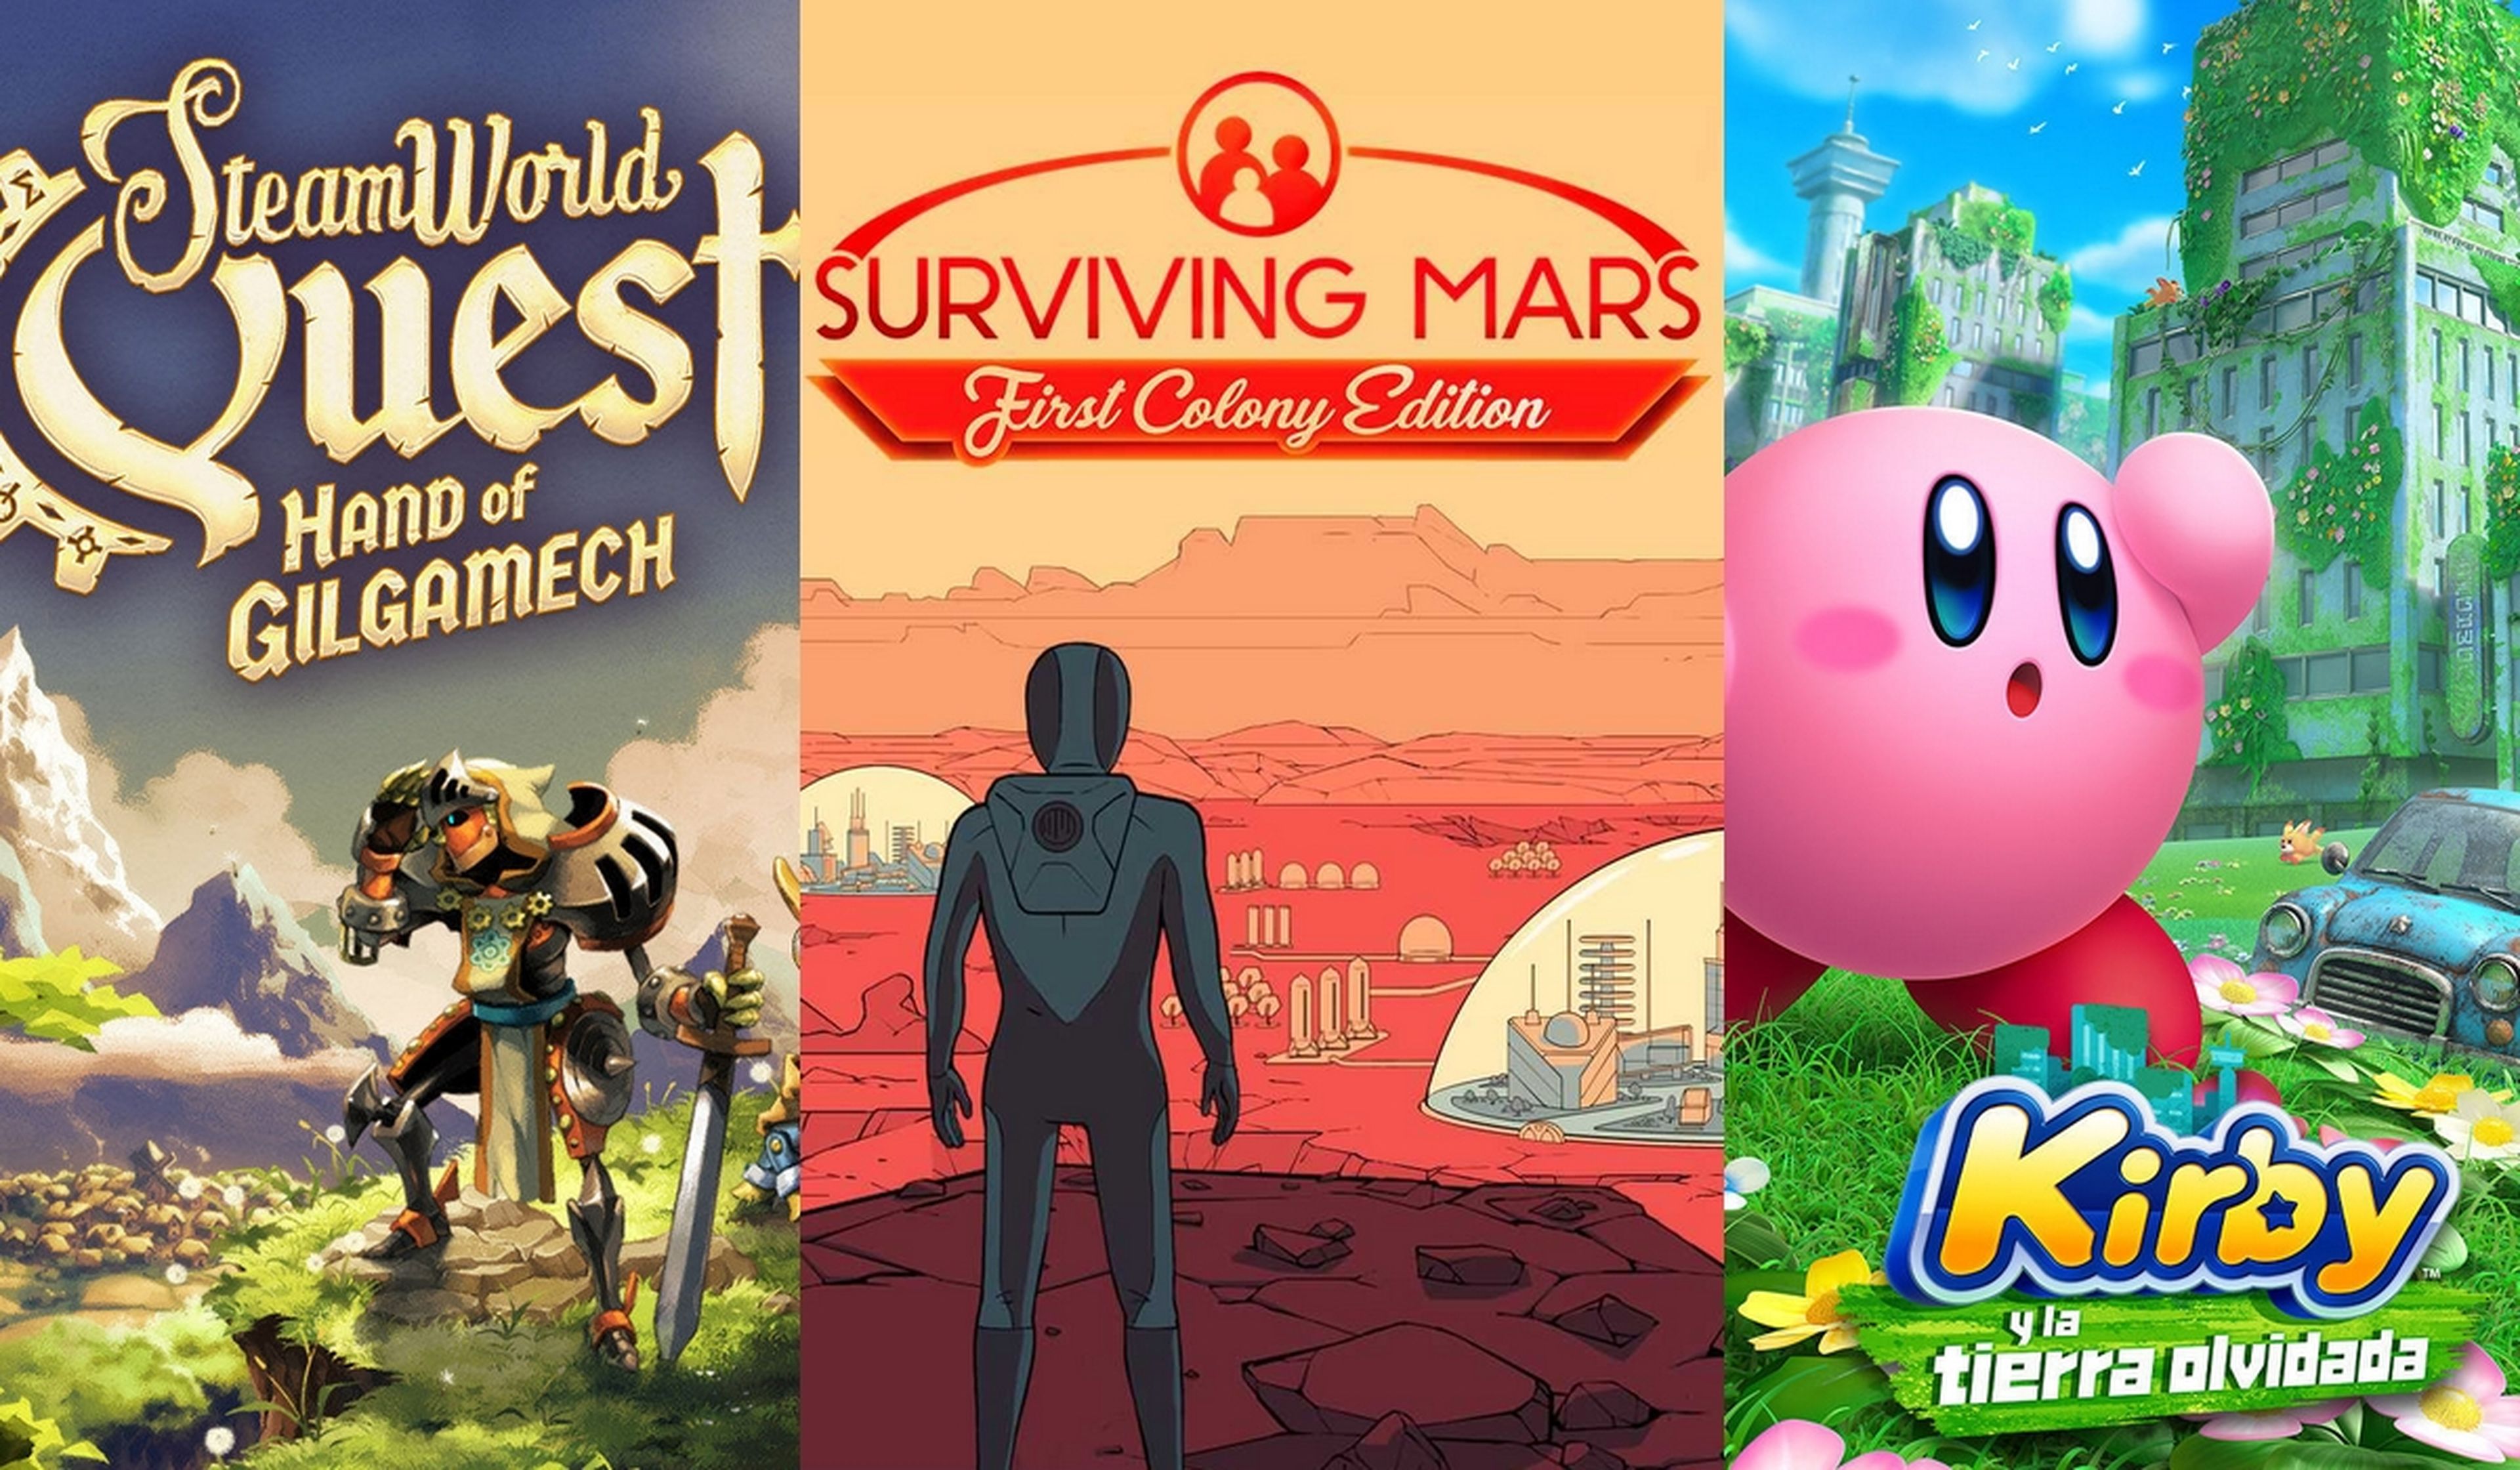 Descarga gratis Surviving Mars, Steamworld Quest, varios juegos retro, la demo de Kirby, y mucho más